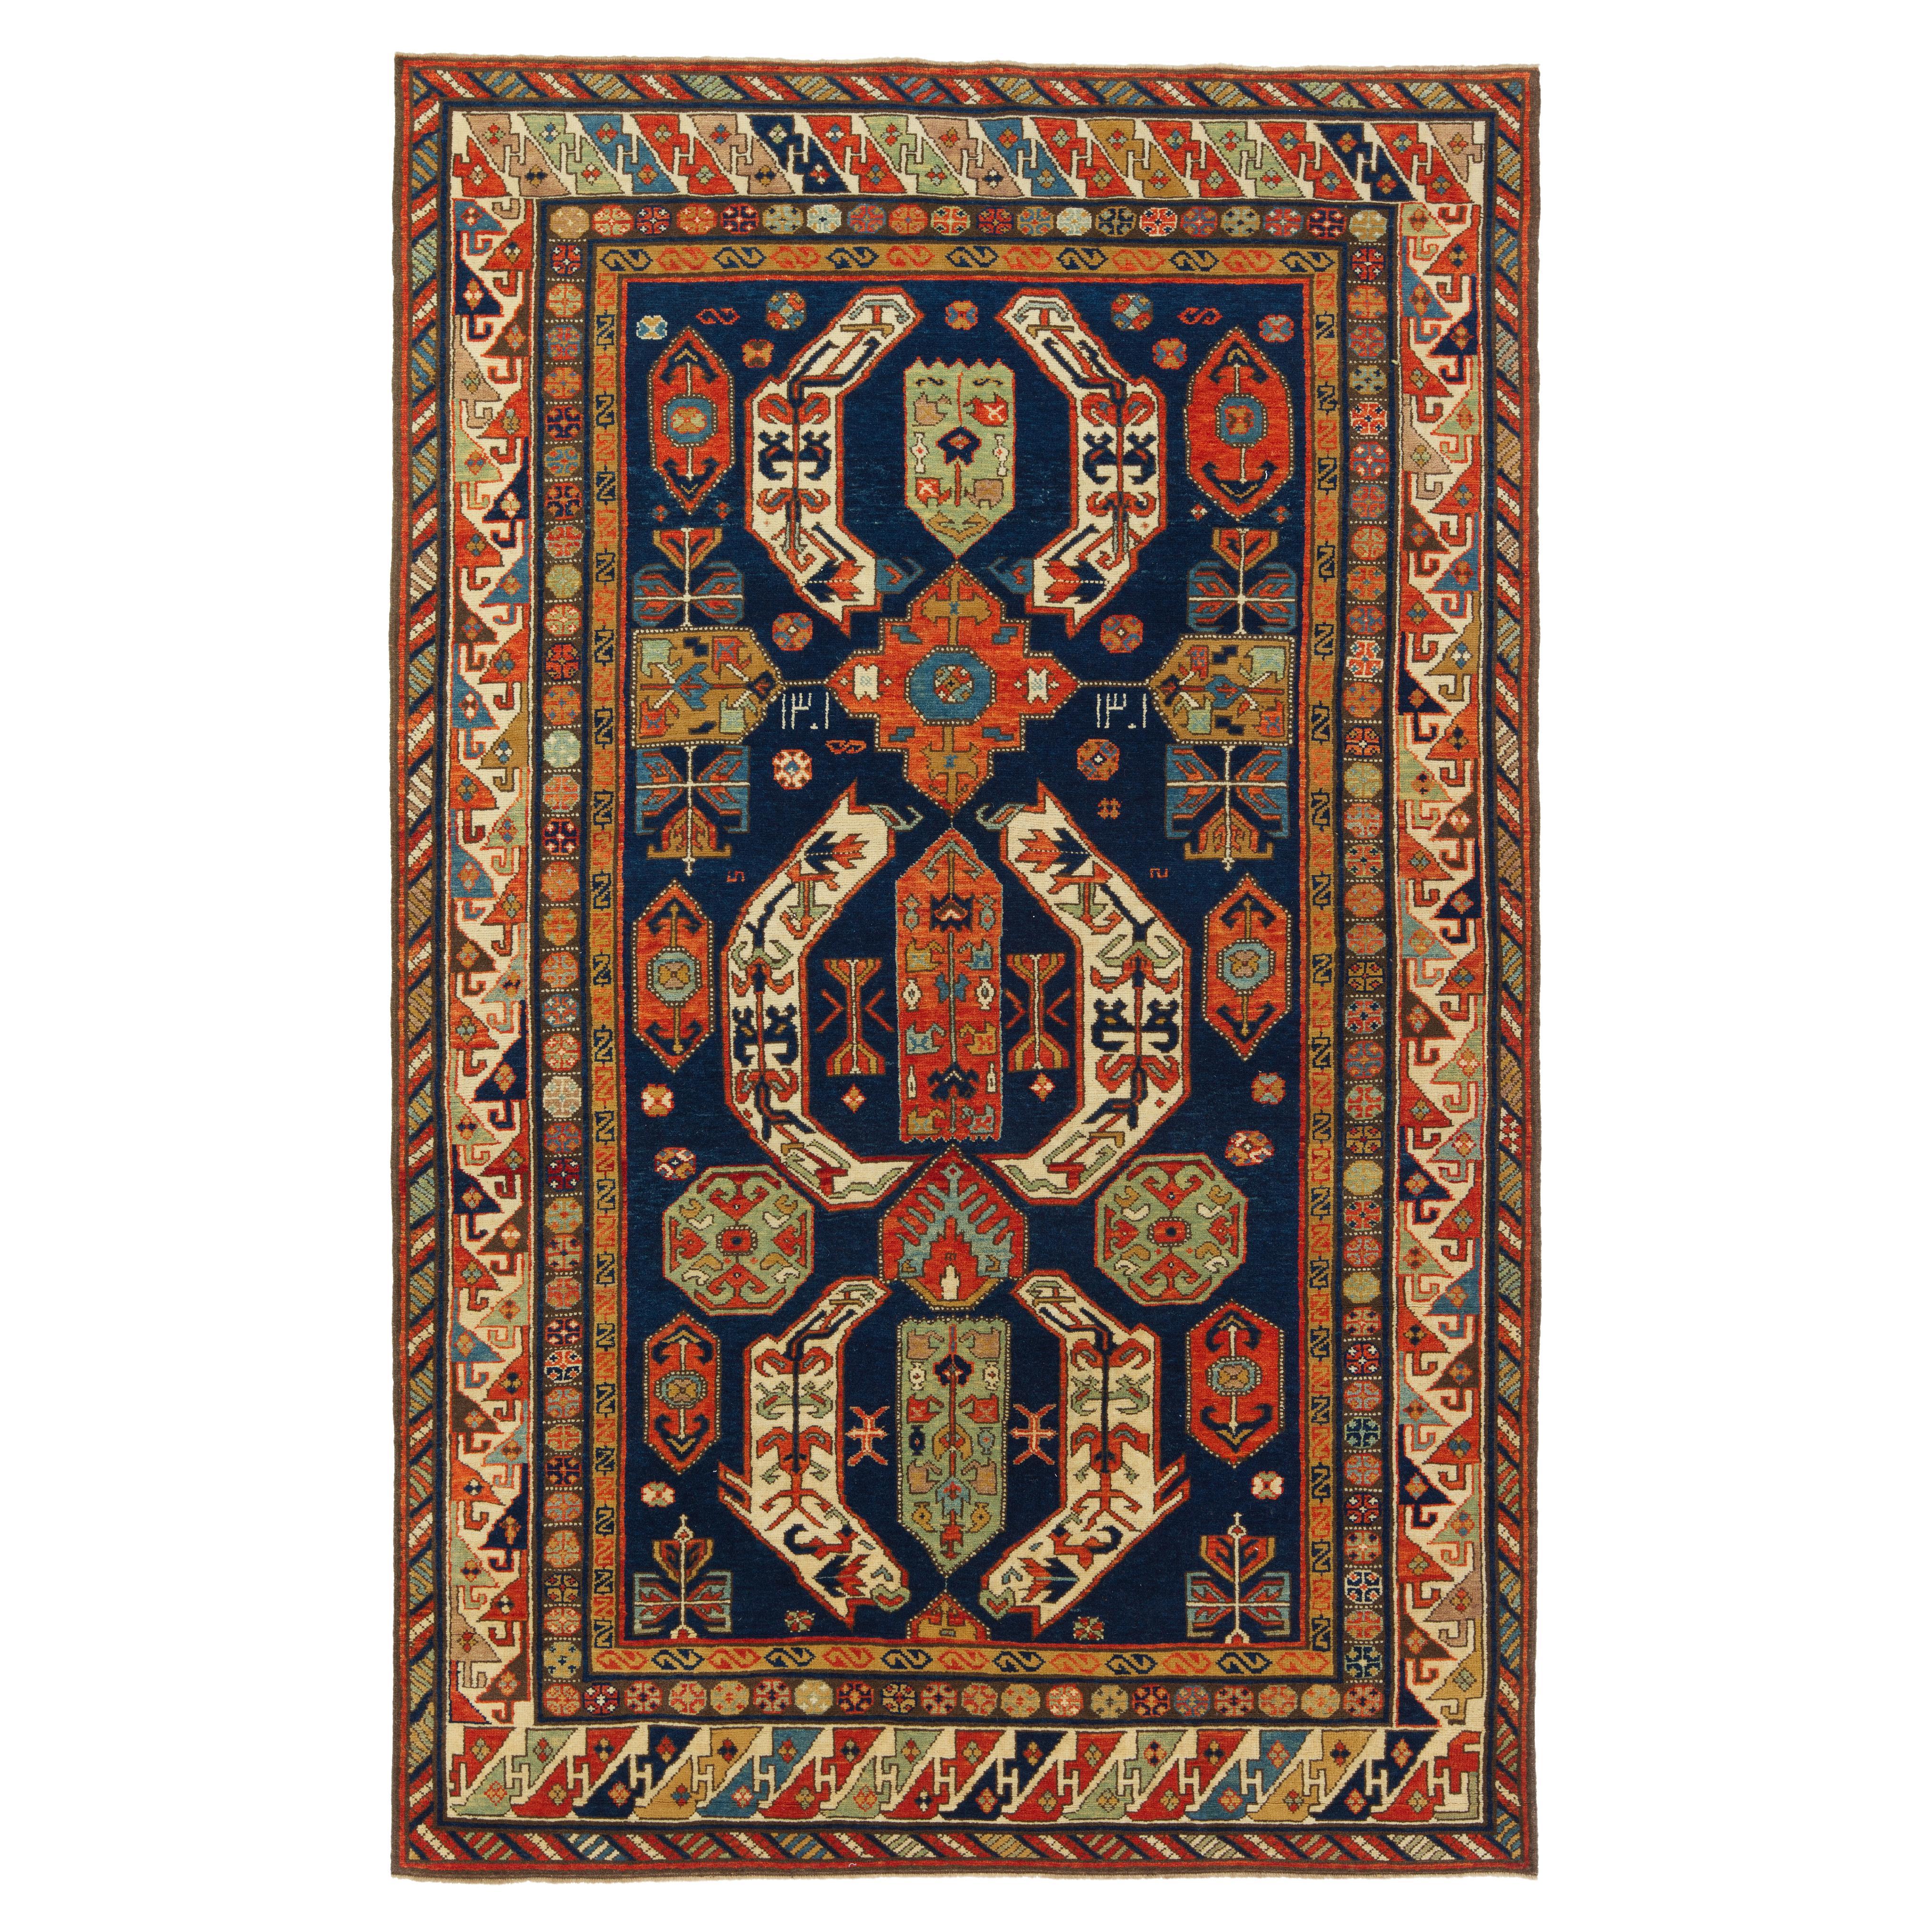 Ararat Rugs Lenkoran Rug Caucasian Revival 19 Century Carpet, Natural Dyed For Sale